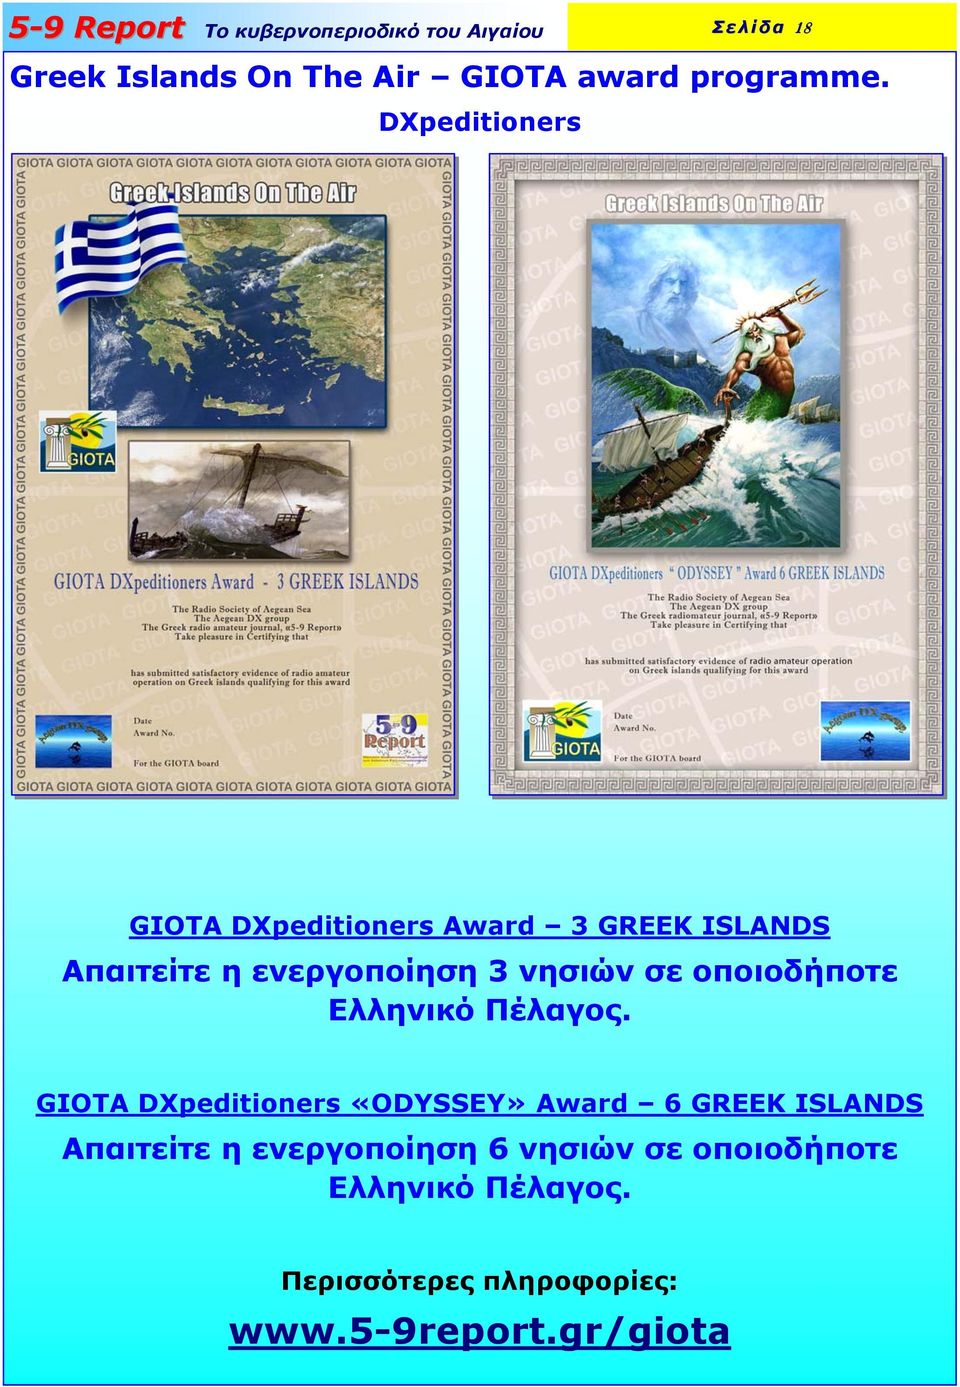 νησιών σε οποιοδήποτε Ελληνικό Πέλαγος.